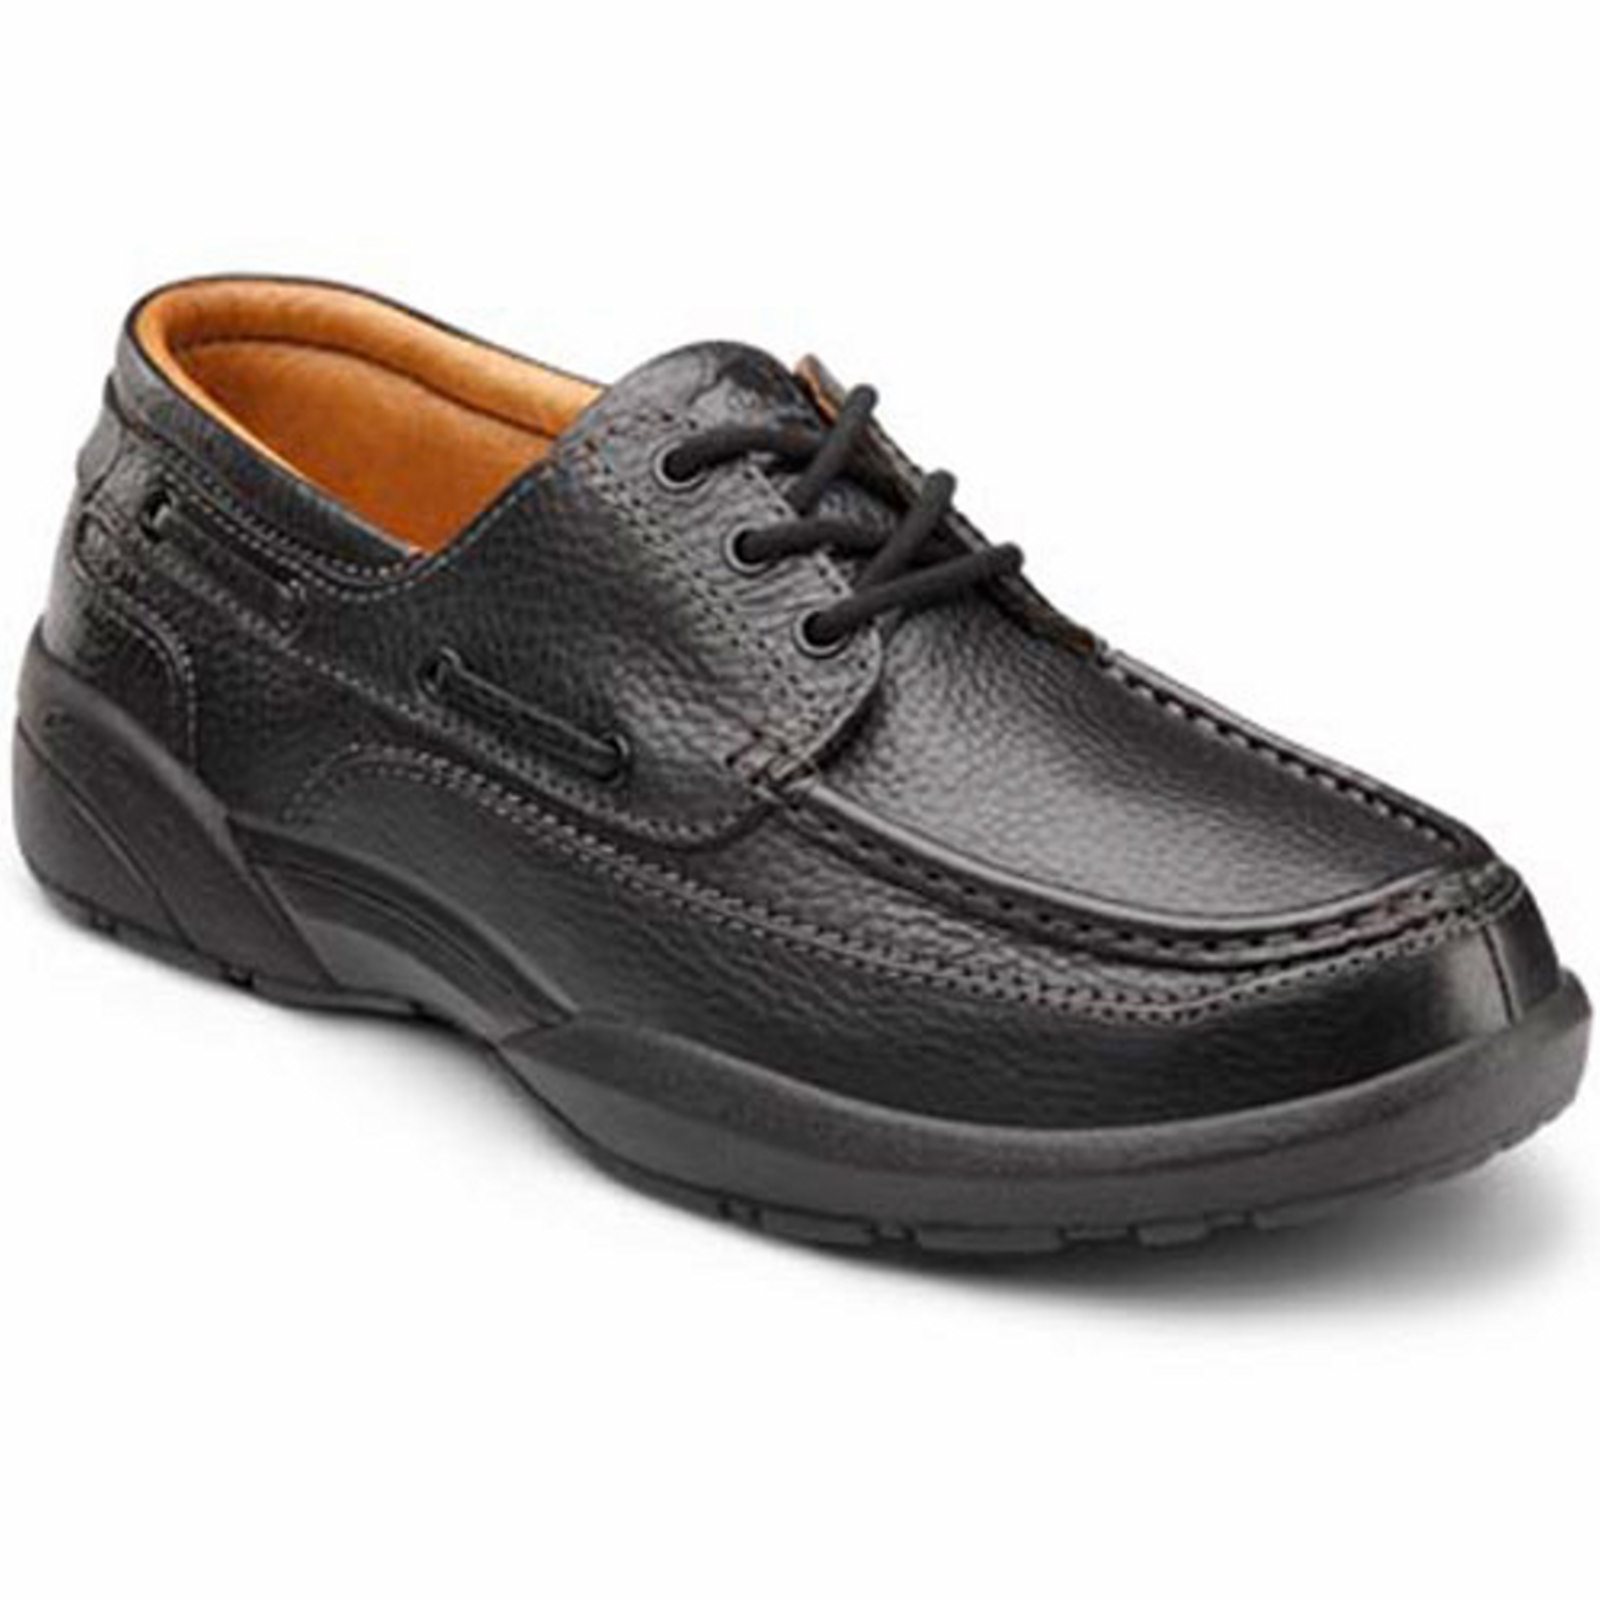 Dr. Comfort Patrick Men's Boat Shoe: 9 Wide (E/2E) Black Lace - image 1 of 4